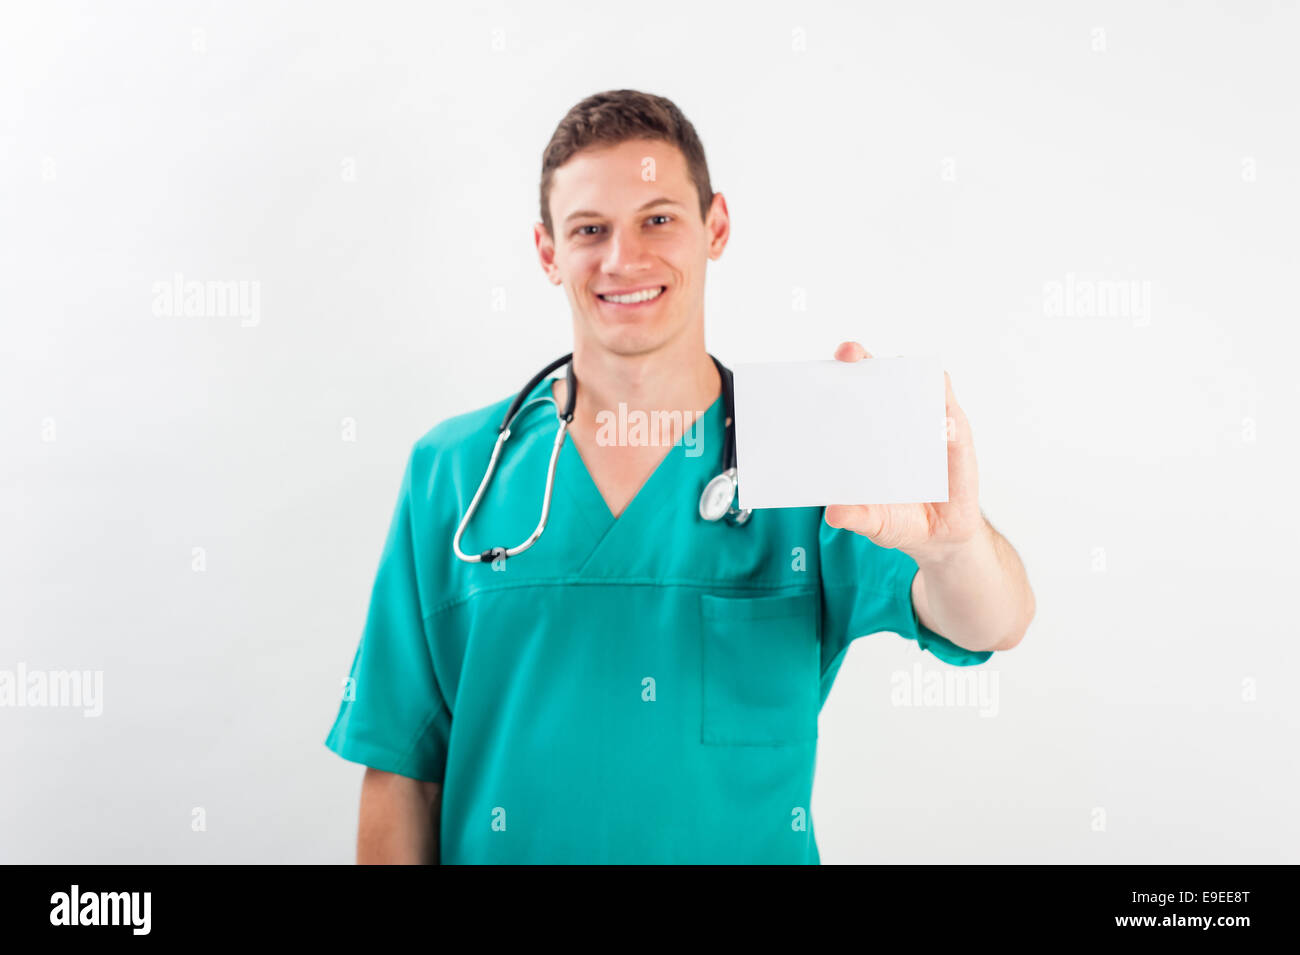 Medizinische Porträt. Männliche Krankenschwester oder junger Mann Arzt lächelte glücklich und stolz in Blau scrubs auf weißem Hintergrund. Junge kaukasier Männlich medizinische pro Stockfoto